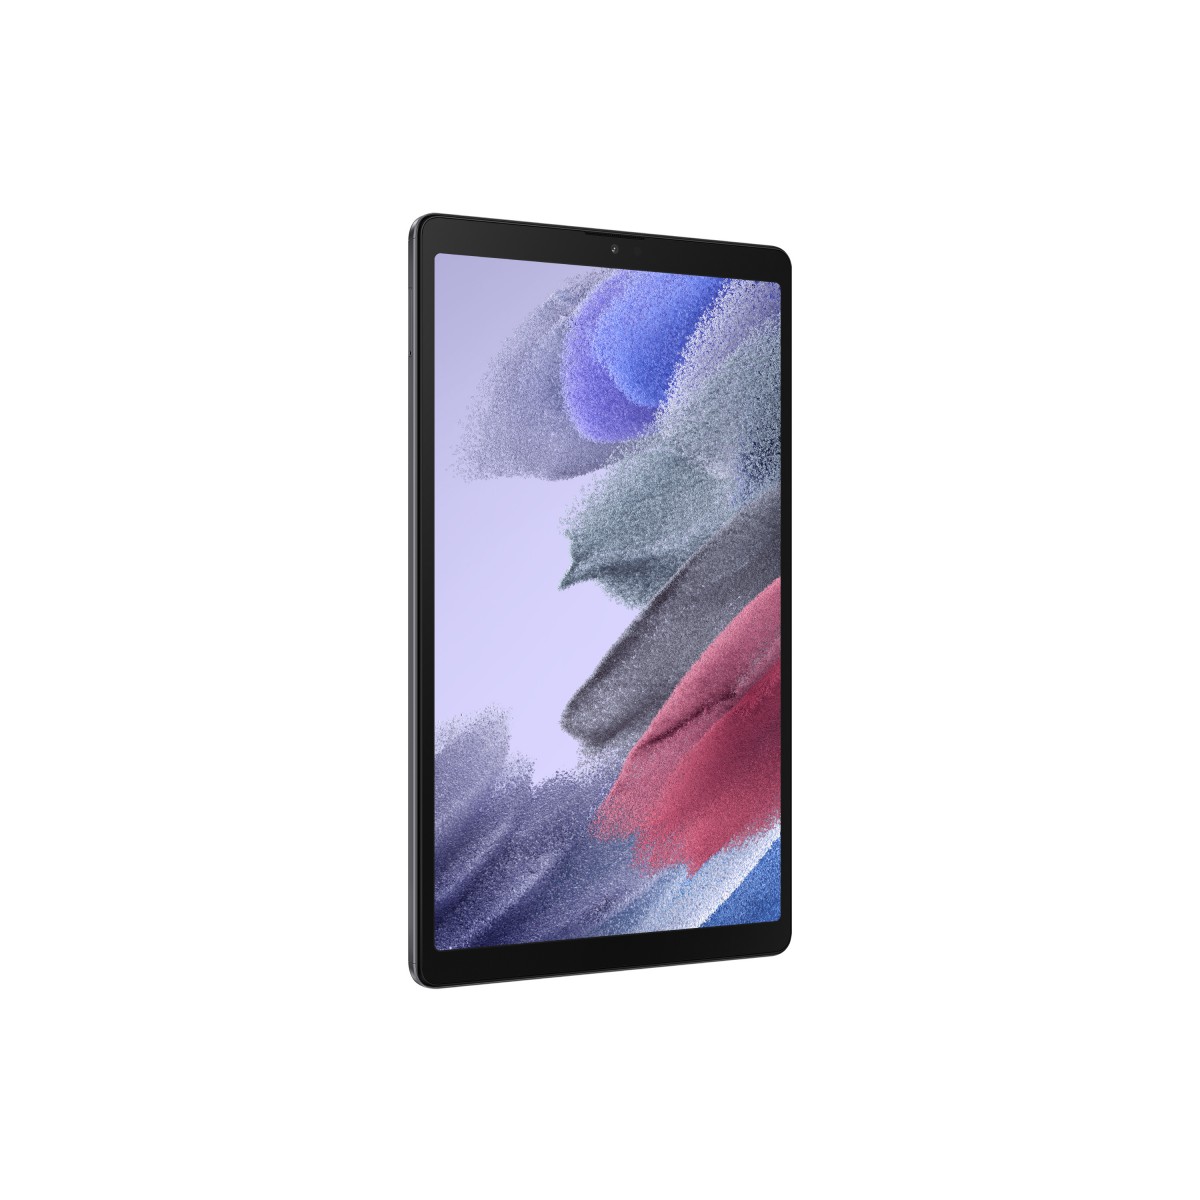 Samsung Galaxy Tab A 32 GB Gray - 8.7 Tablet - A7 2.3 GHz 22.05cm-Display